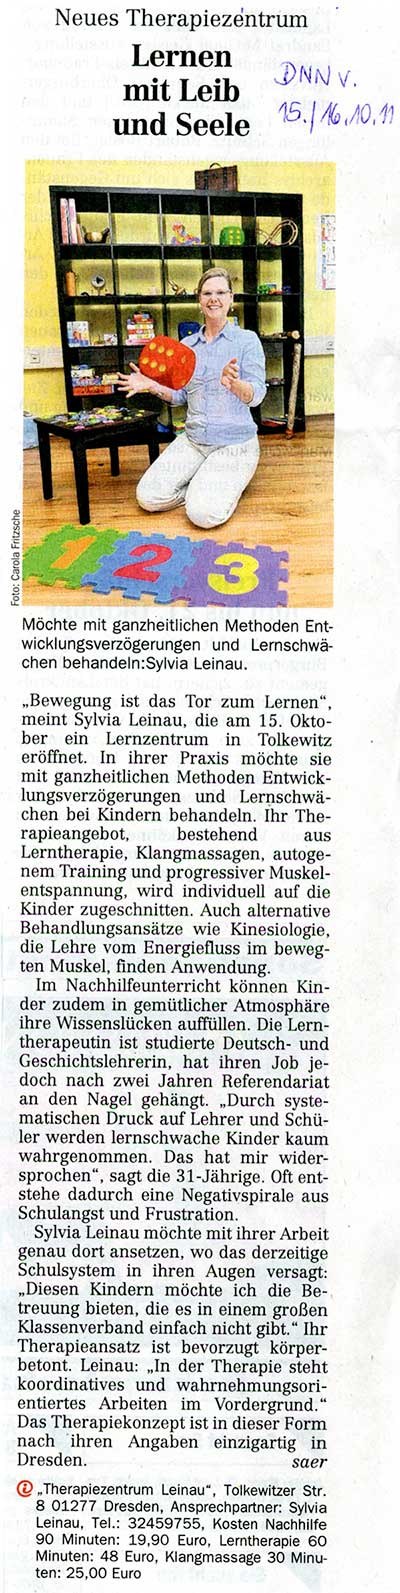 Artikel Dresdner Neueste Nachrichten vom 15.10.2011